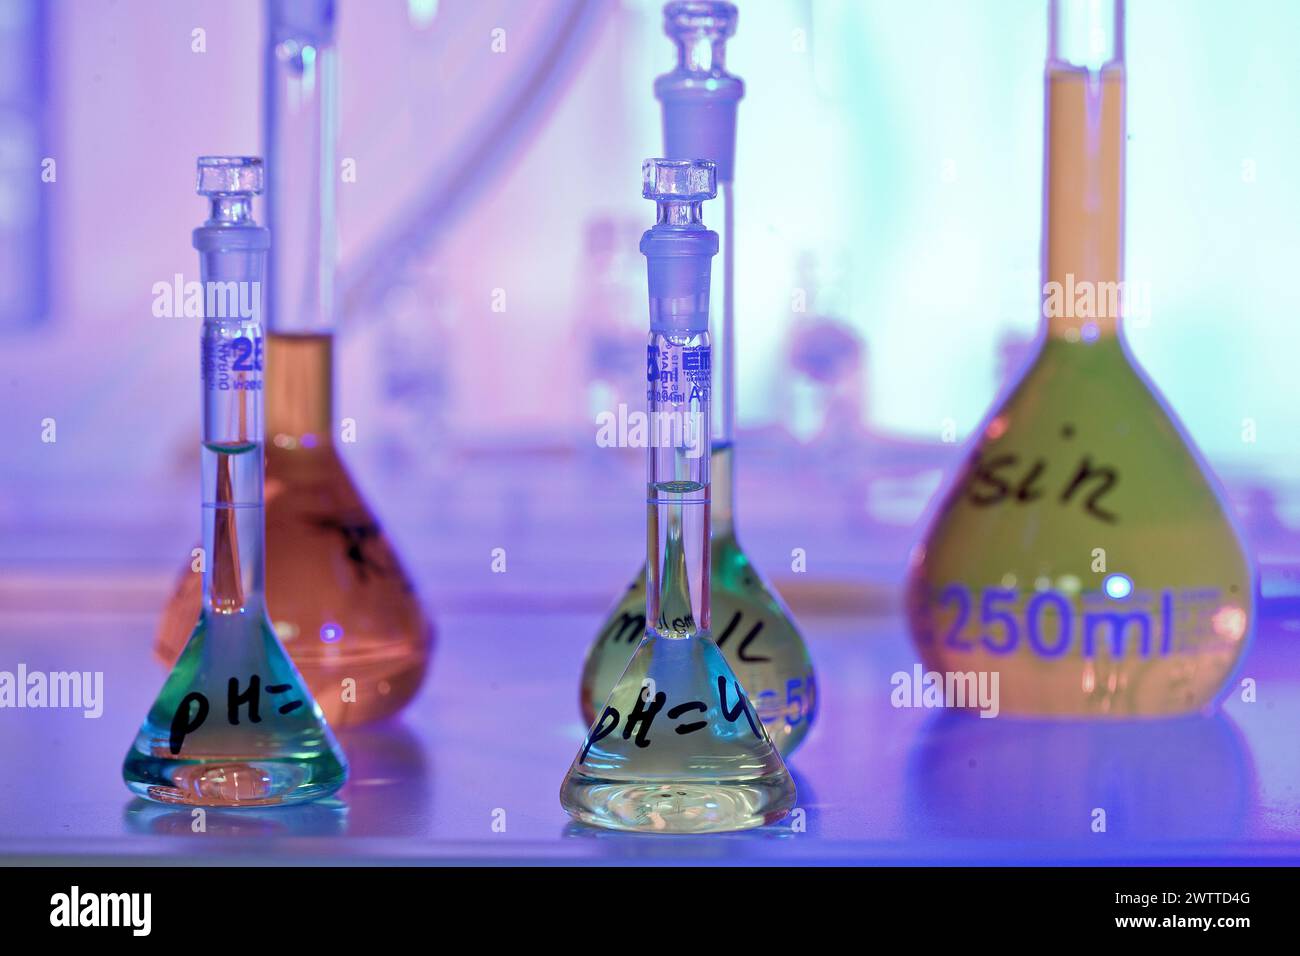 Une scène de chimie colorée avec diverses verreries Banque D'Images